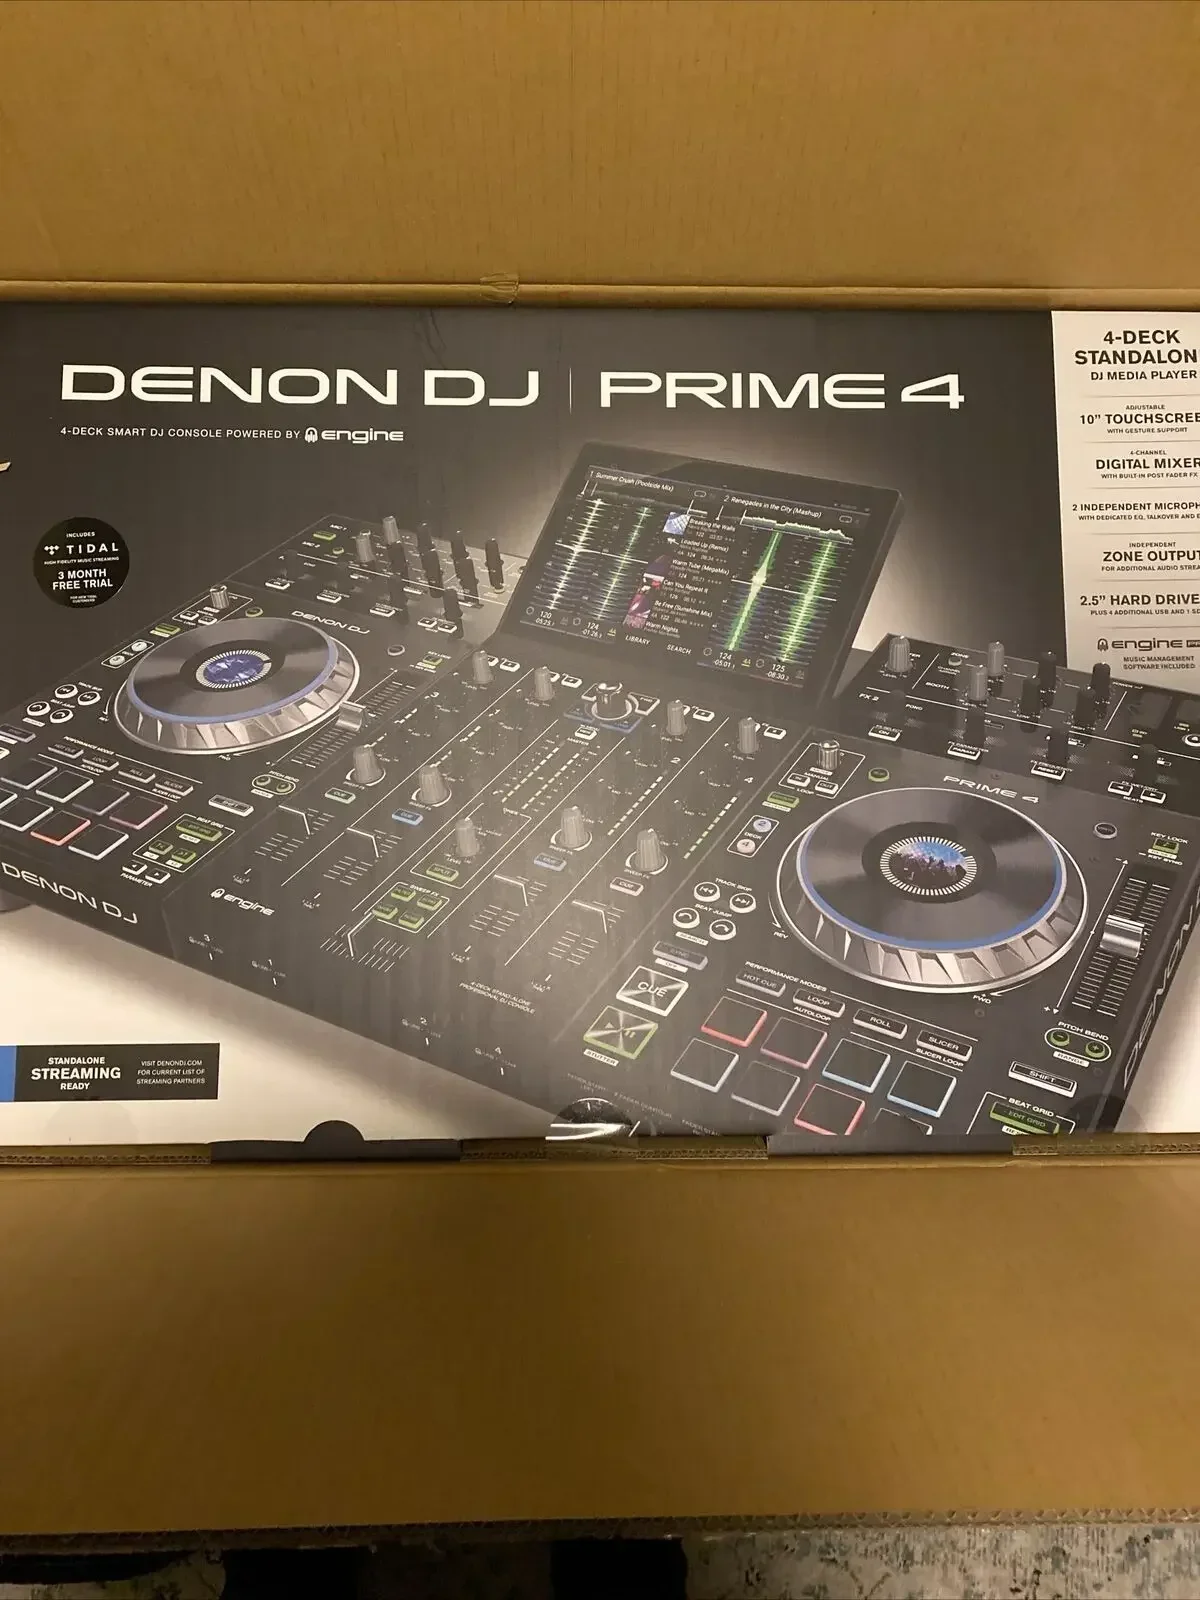 Летняя скидка 50% на Denon DJ PRIME 4 Автономный 4-дековый 10-дюймовый мультитач с высокой четкостью изображения